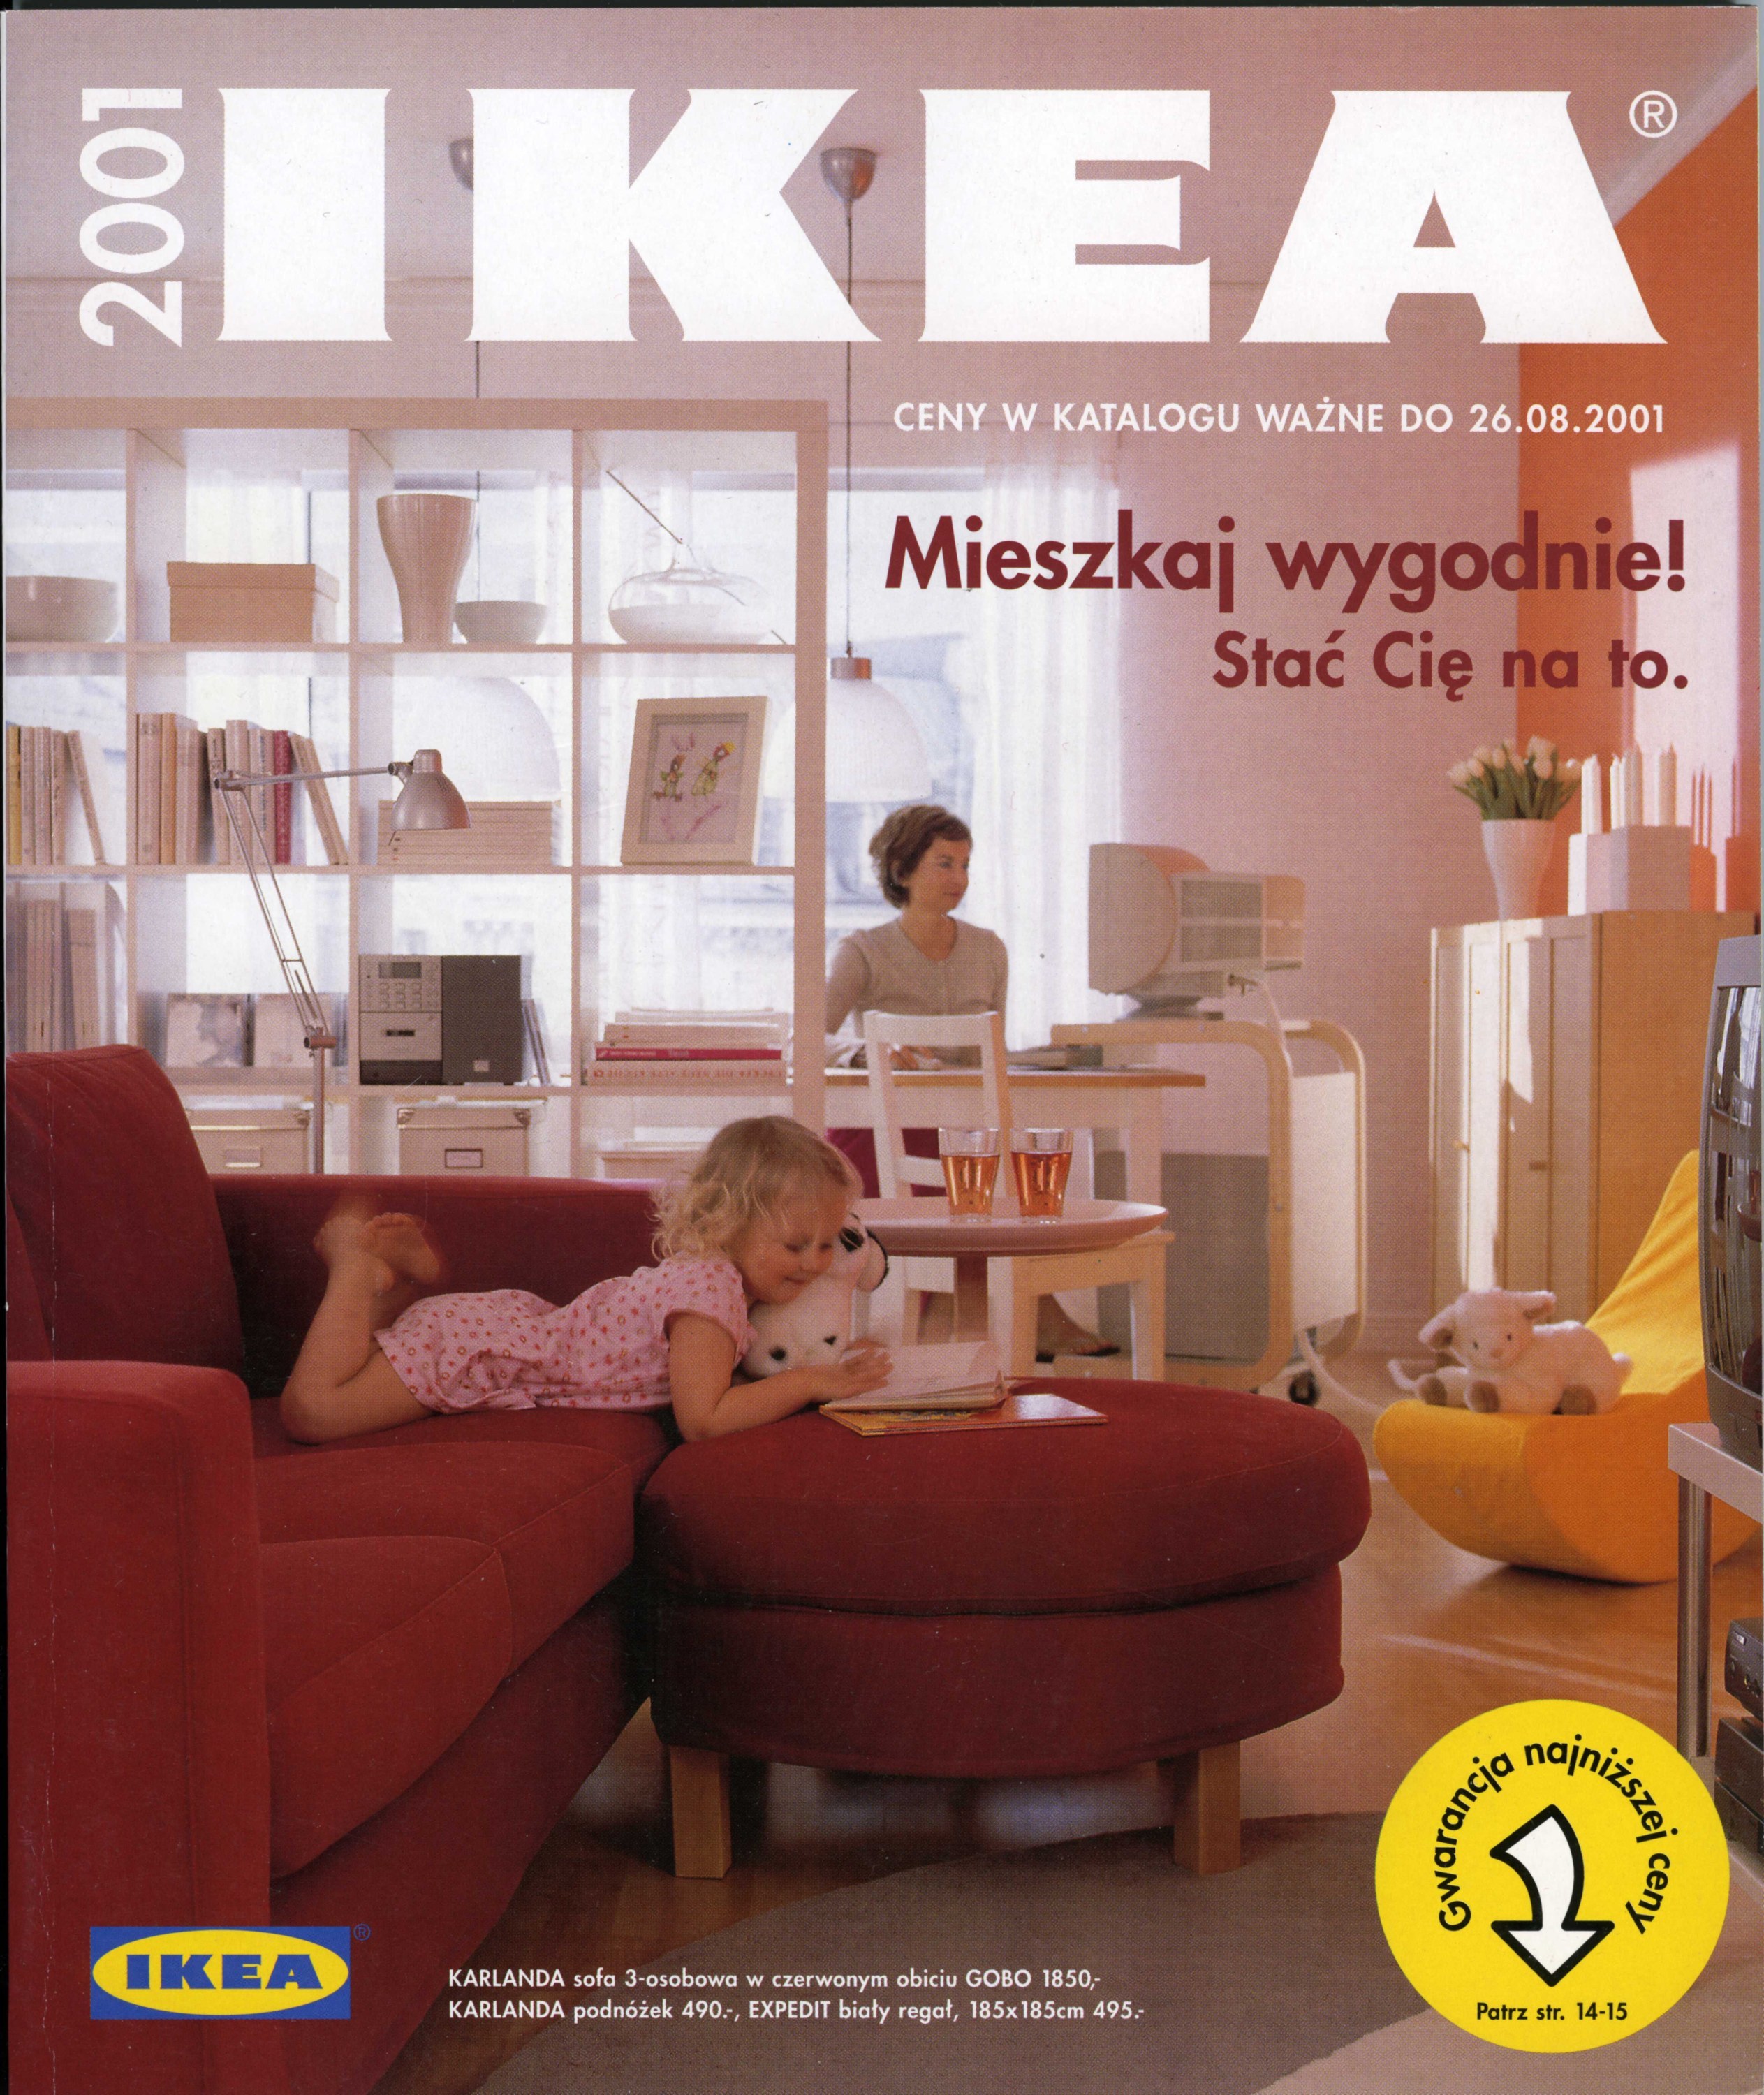 Ikea Finishes Publishing Its Iconic Catalog